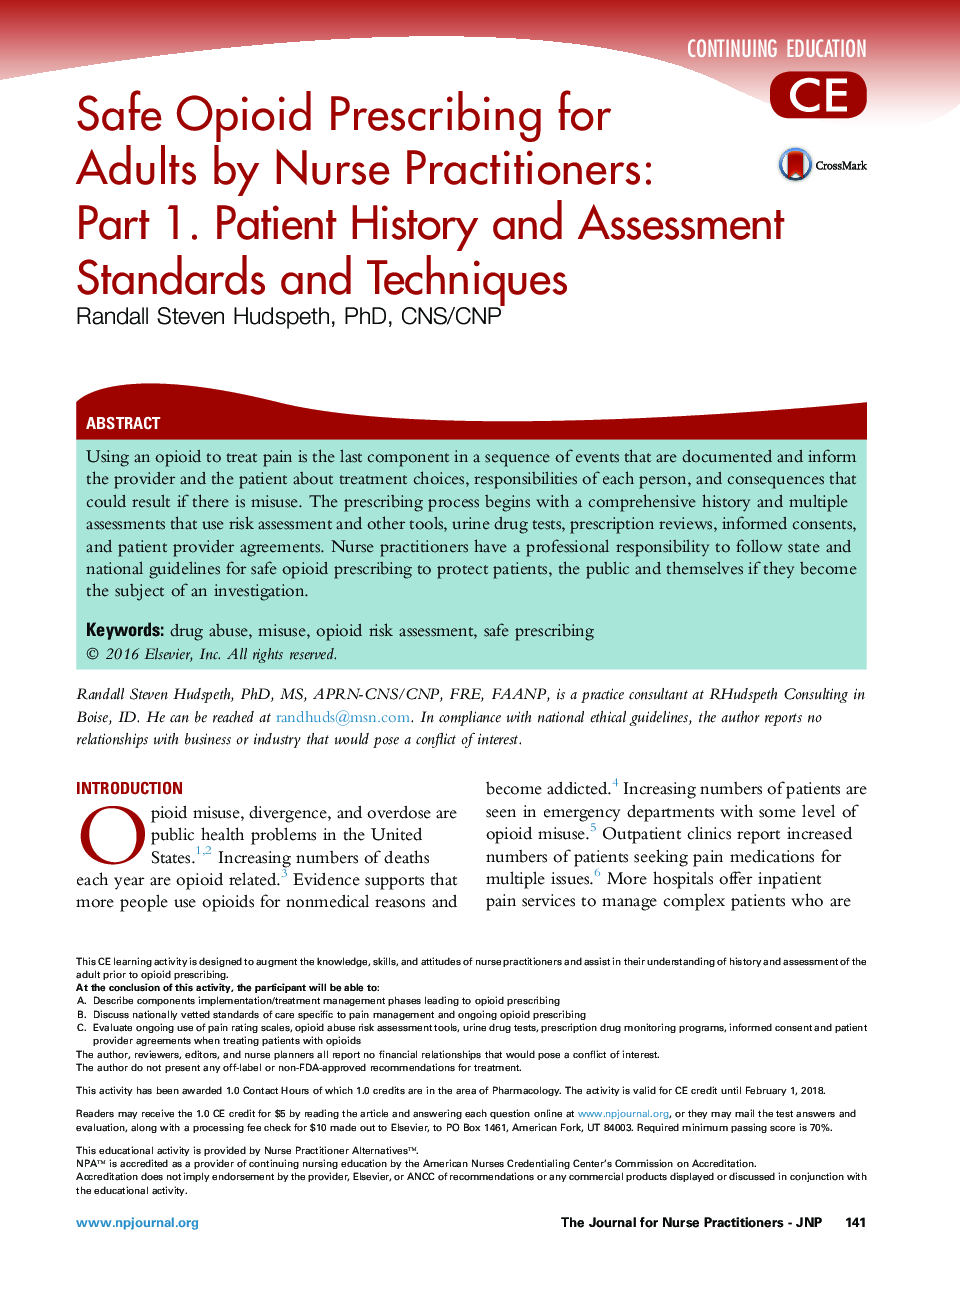 طب سوزنی در بیماران پرستار توصیه می شود: بخش 1. استانداردهای و تکنیک های تاریخچه و ارزیابی بیمار 